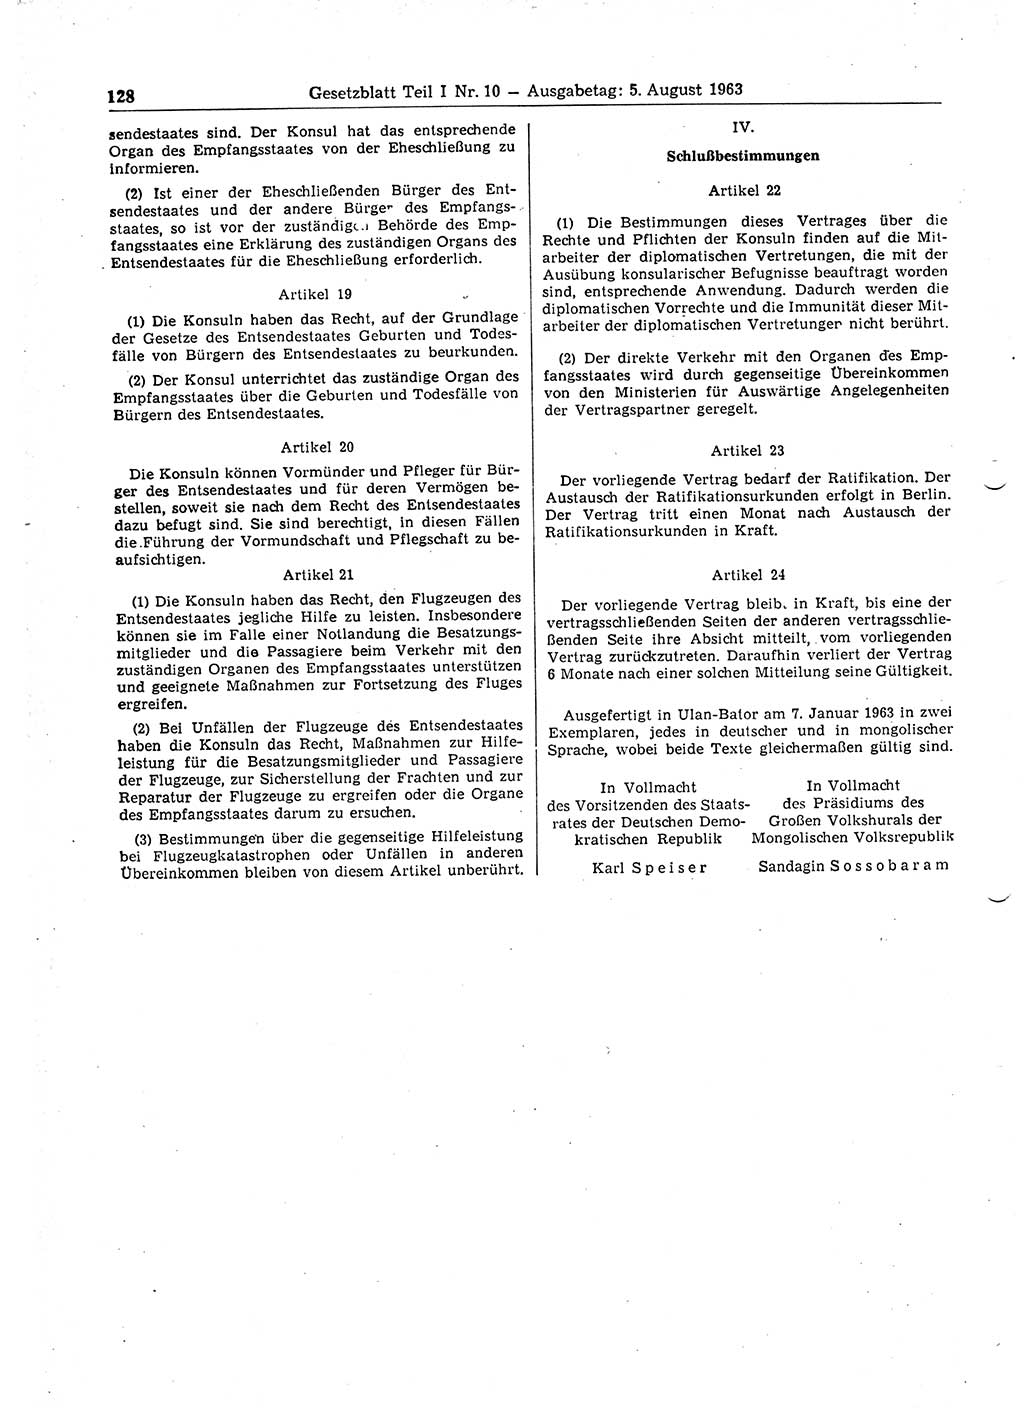 Gesetzblatt (GBl.) der Deutschen Demokratischen Republik (DDR) Teil Ⅰ 1963, Seite 128 (GBl. DDR Ⅰ 1963, S. 128)